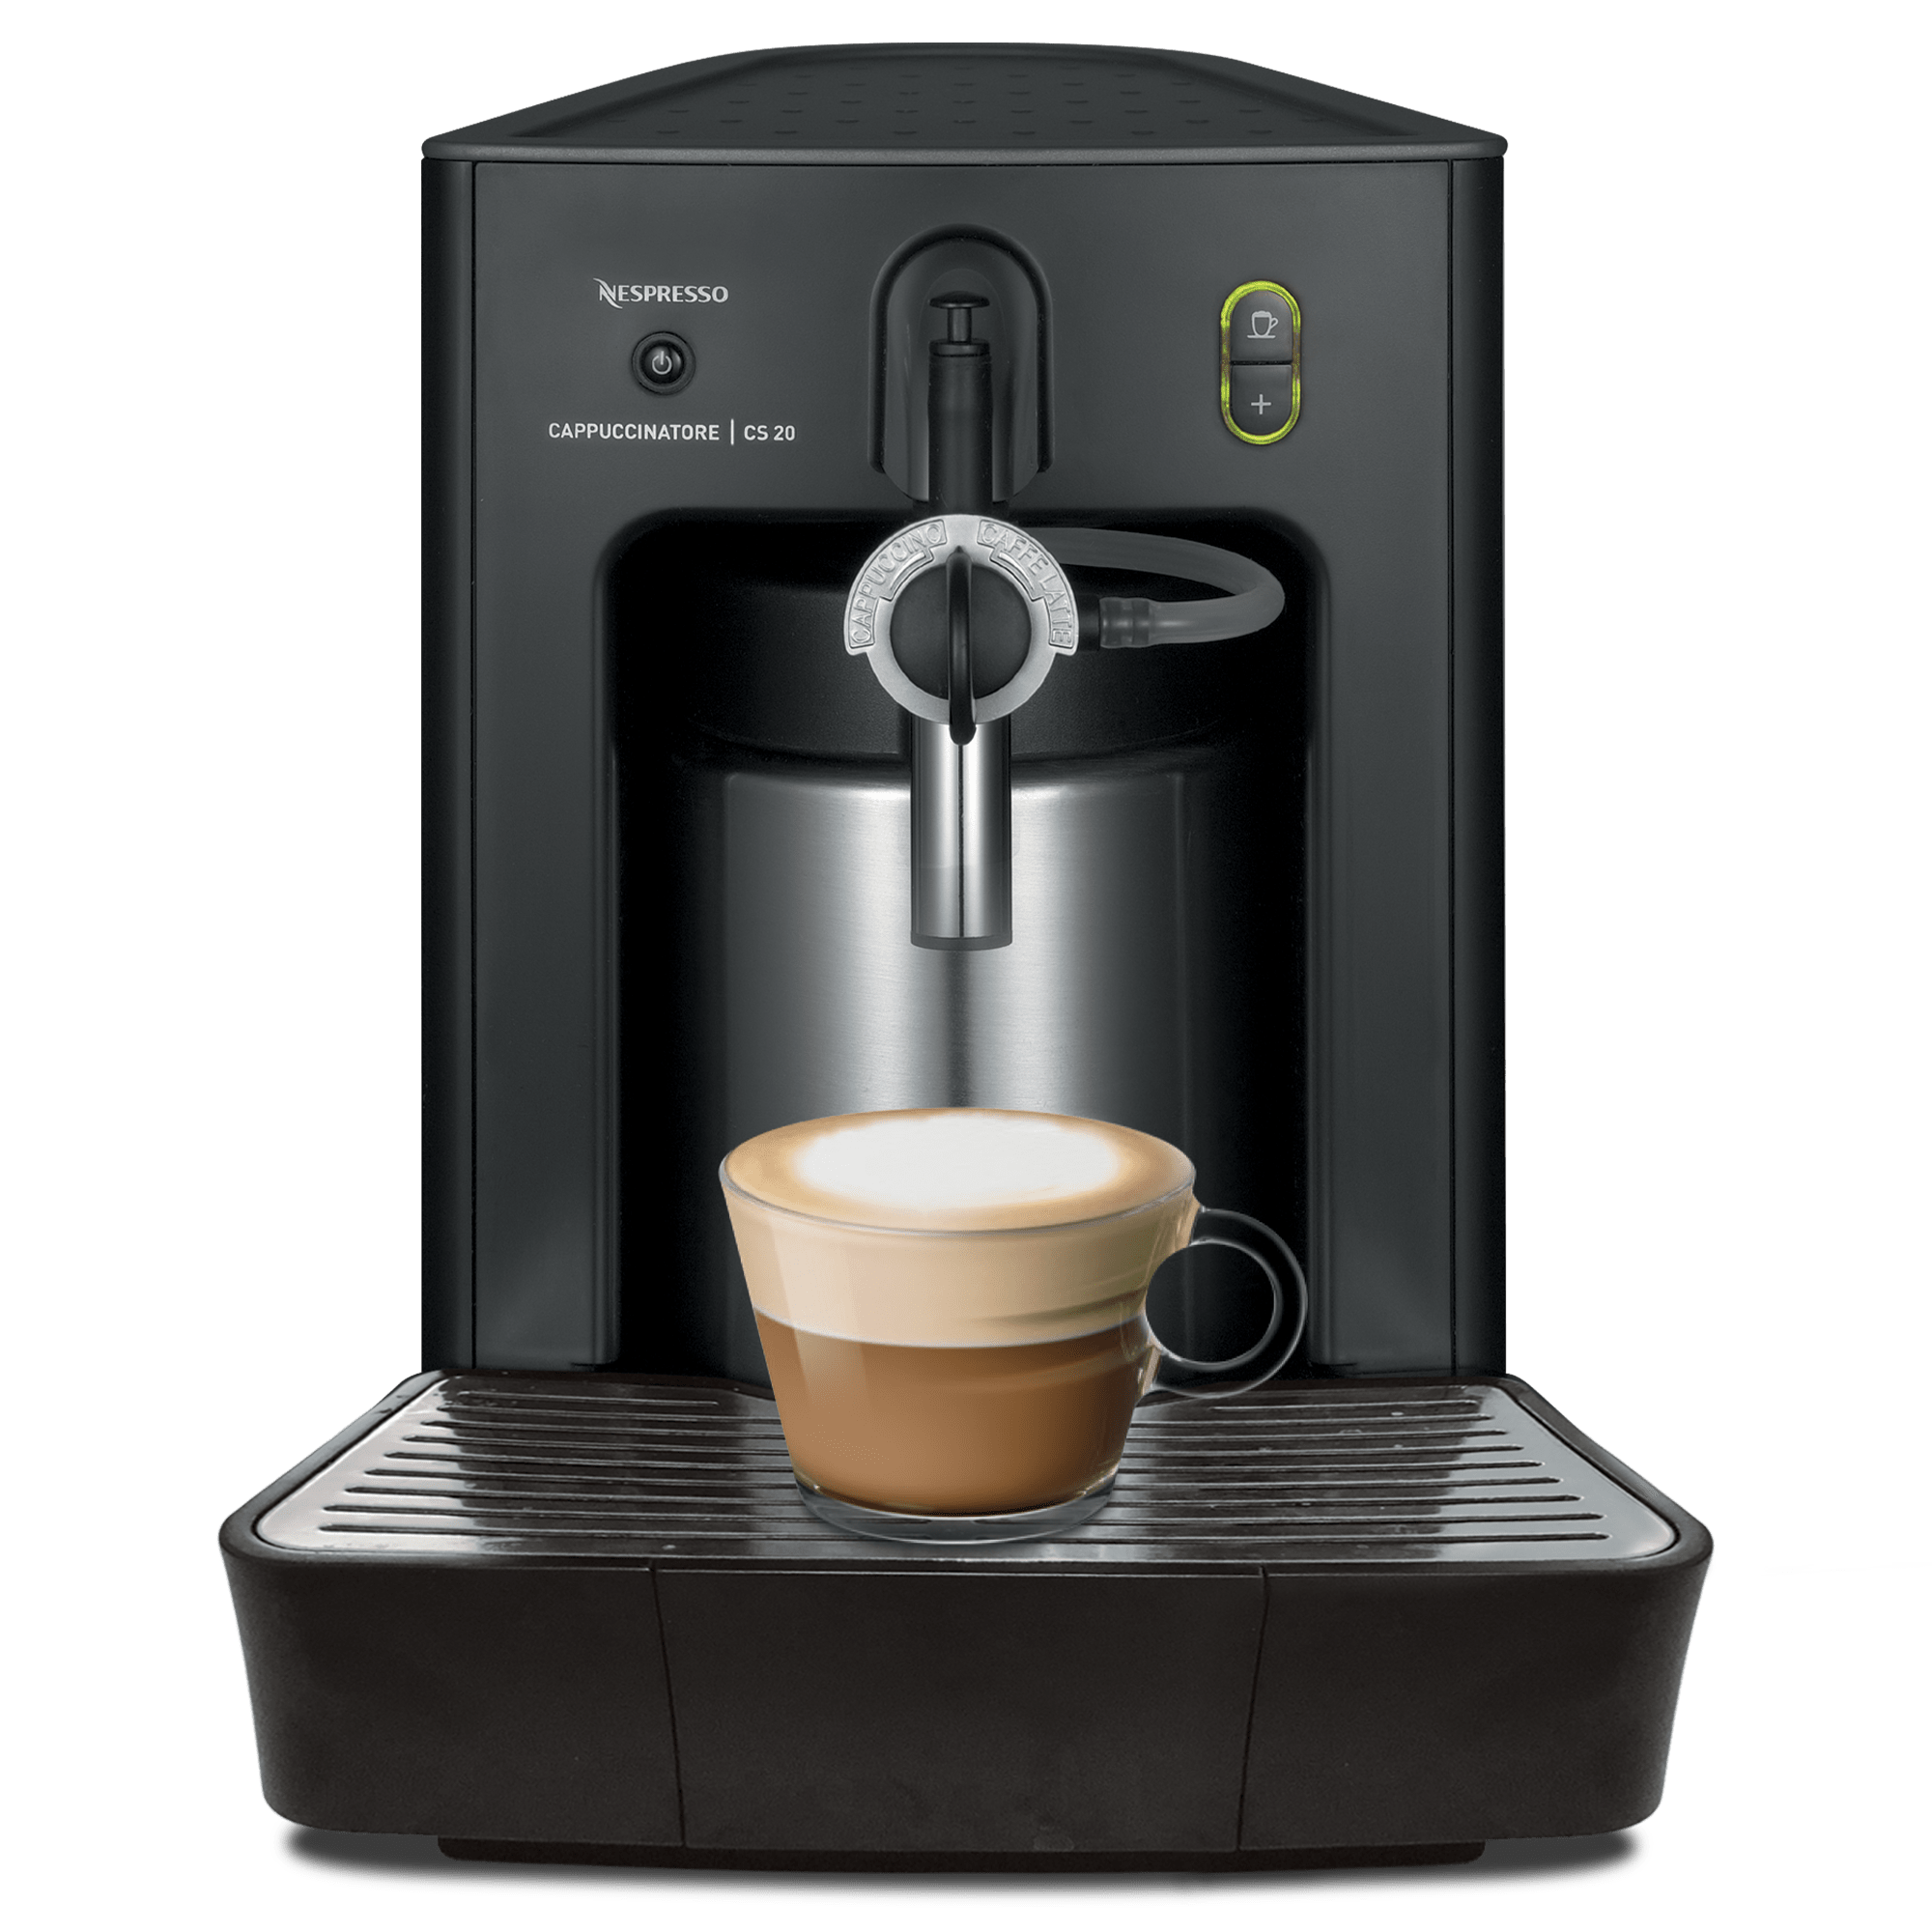 Nespresso Cappuccinatore CS20 Milk Frother - 120V